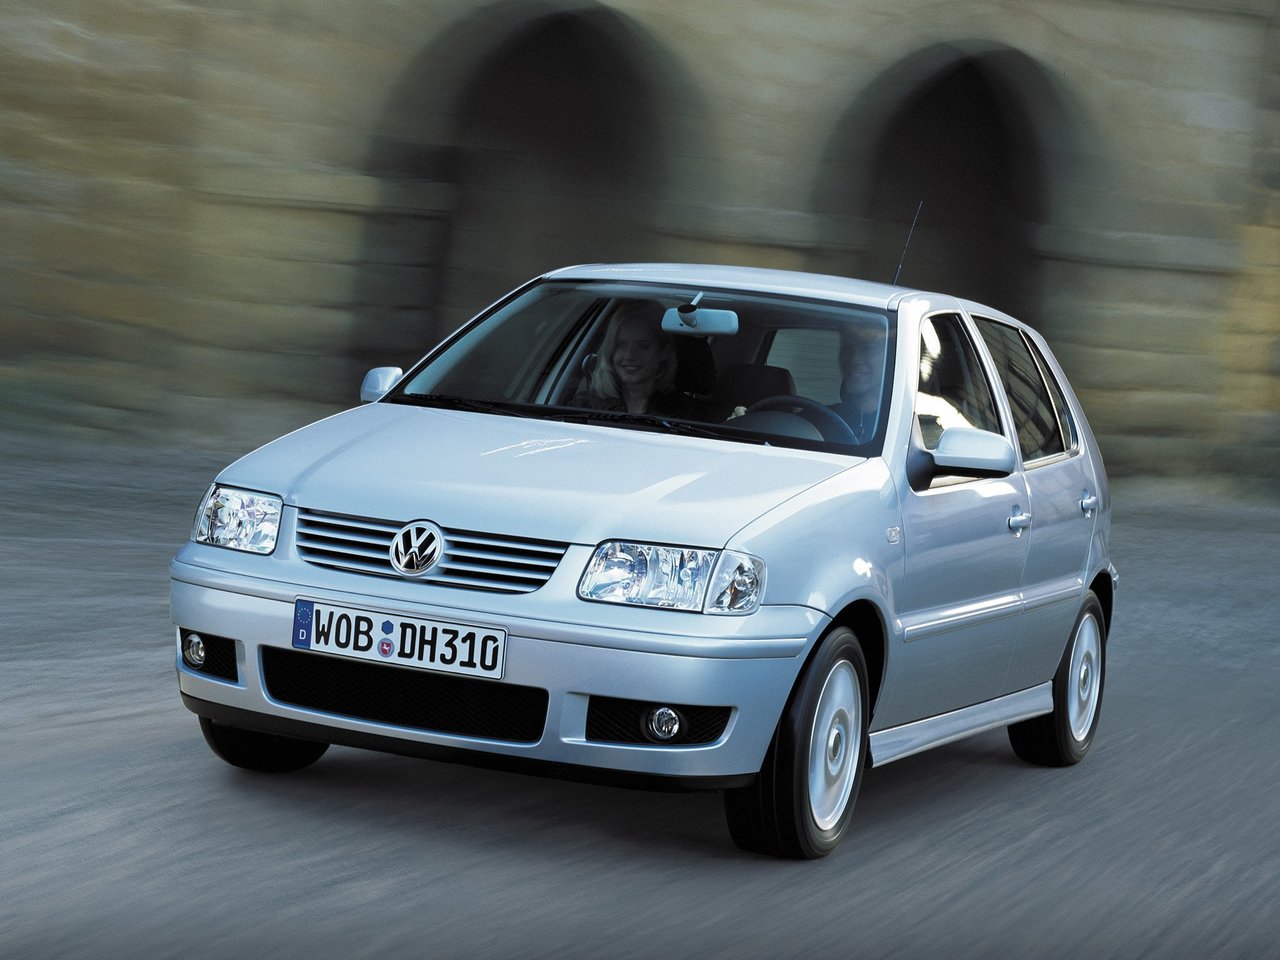 Снижаем расход Volkswagen Polo на топливо, устанавливаем ГБО